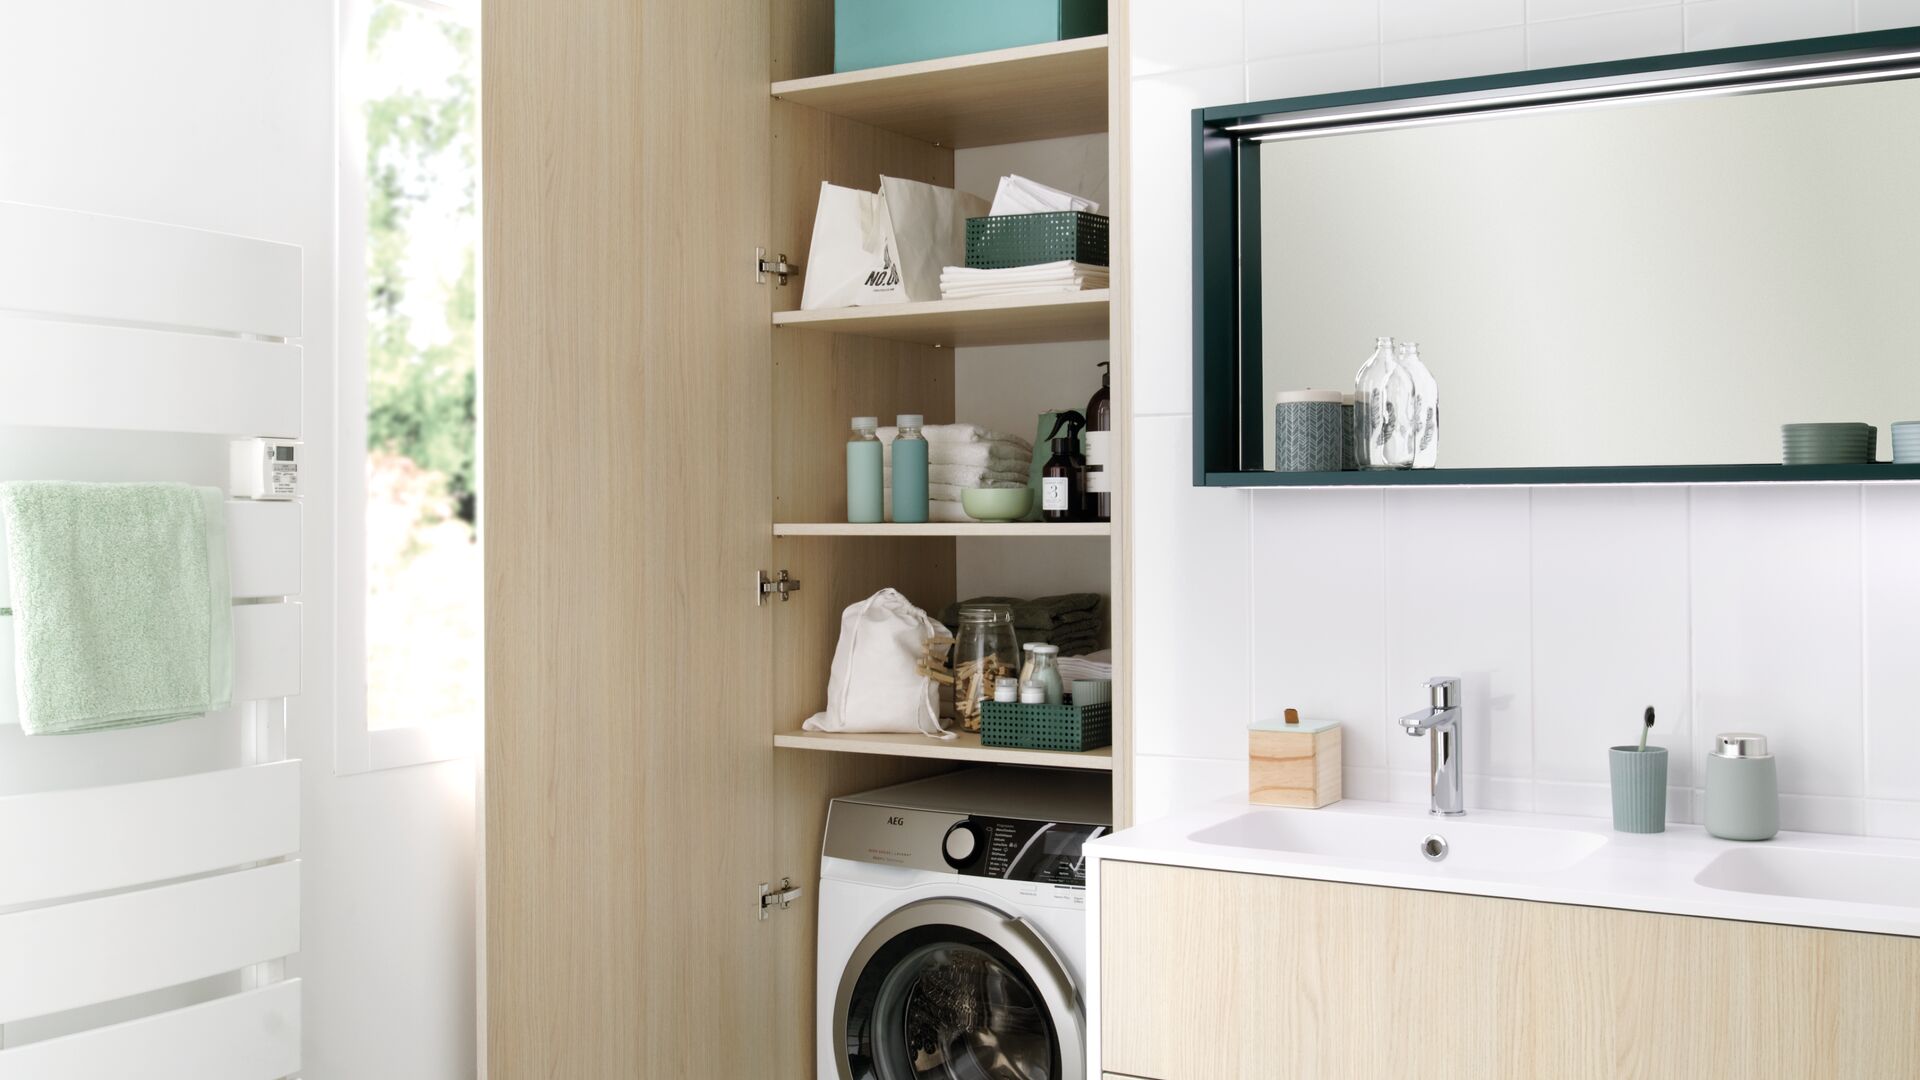 Waschküchenelement mit Waschmaschine, versteckt hinter Schrank mit Holz-Drehtüren